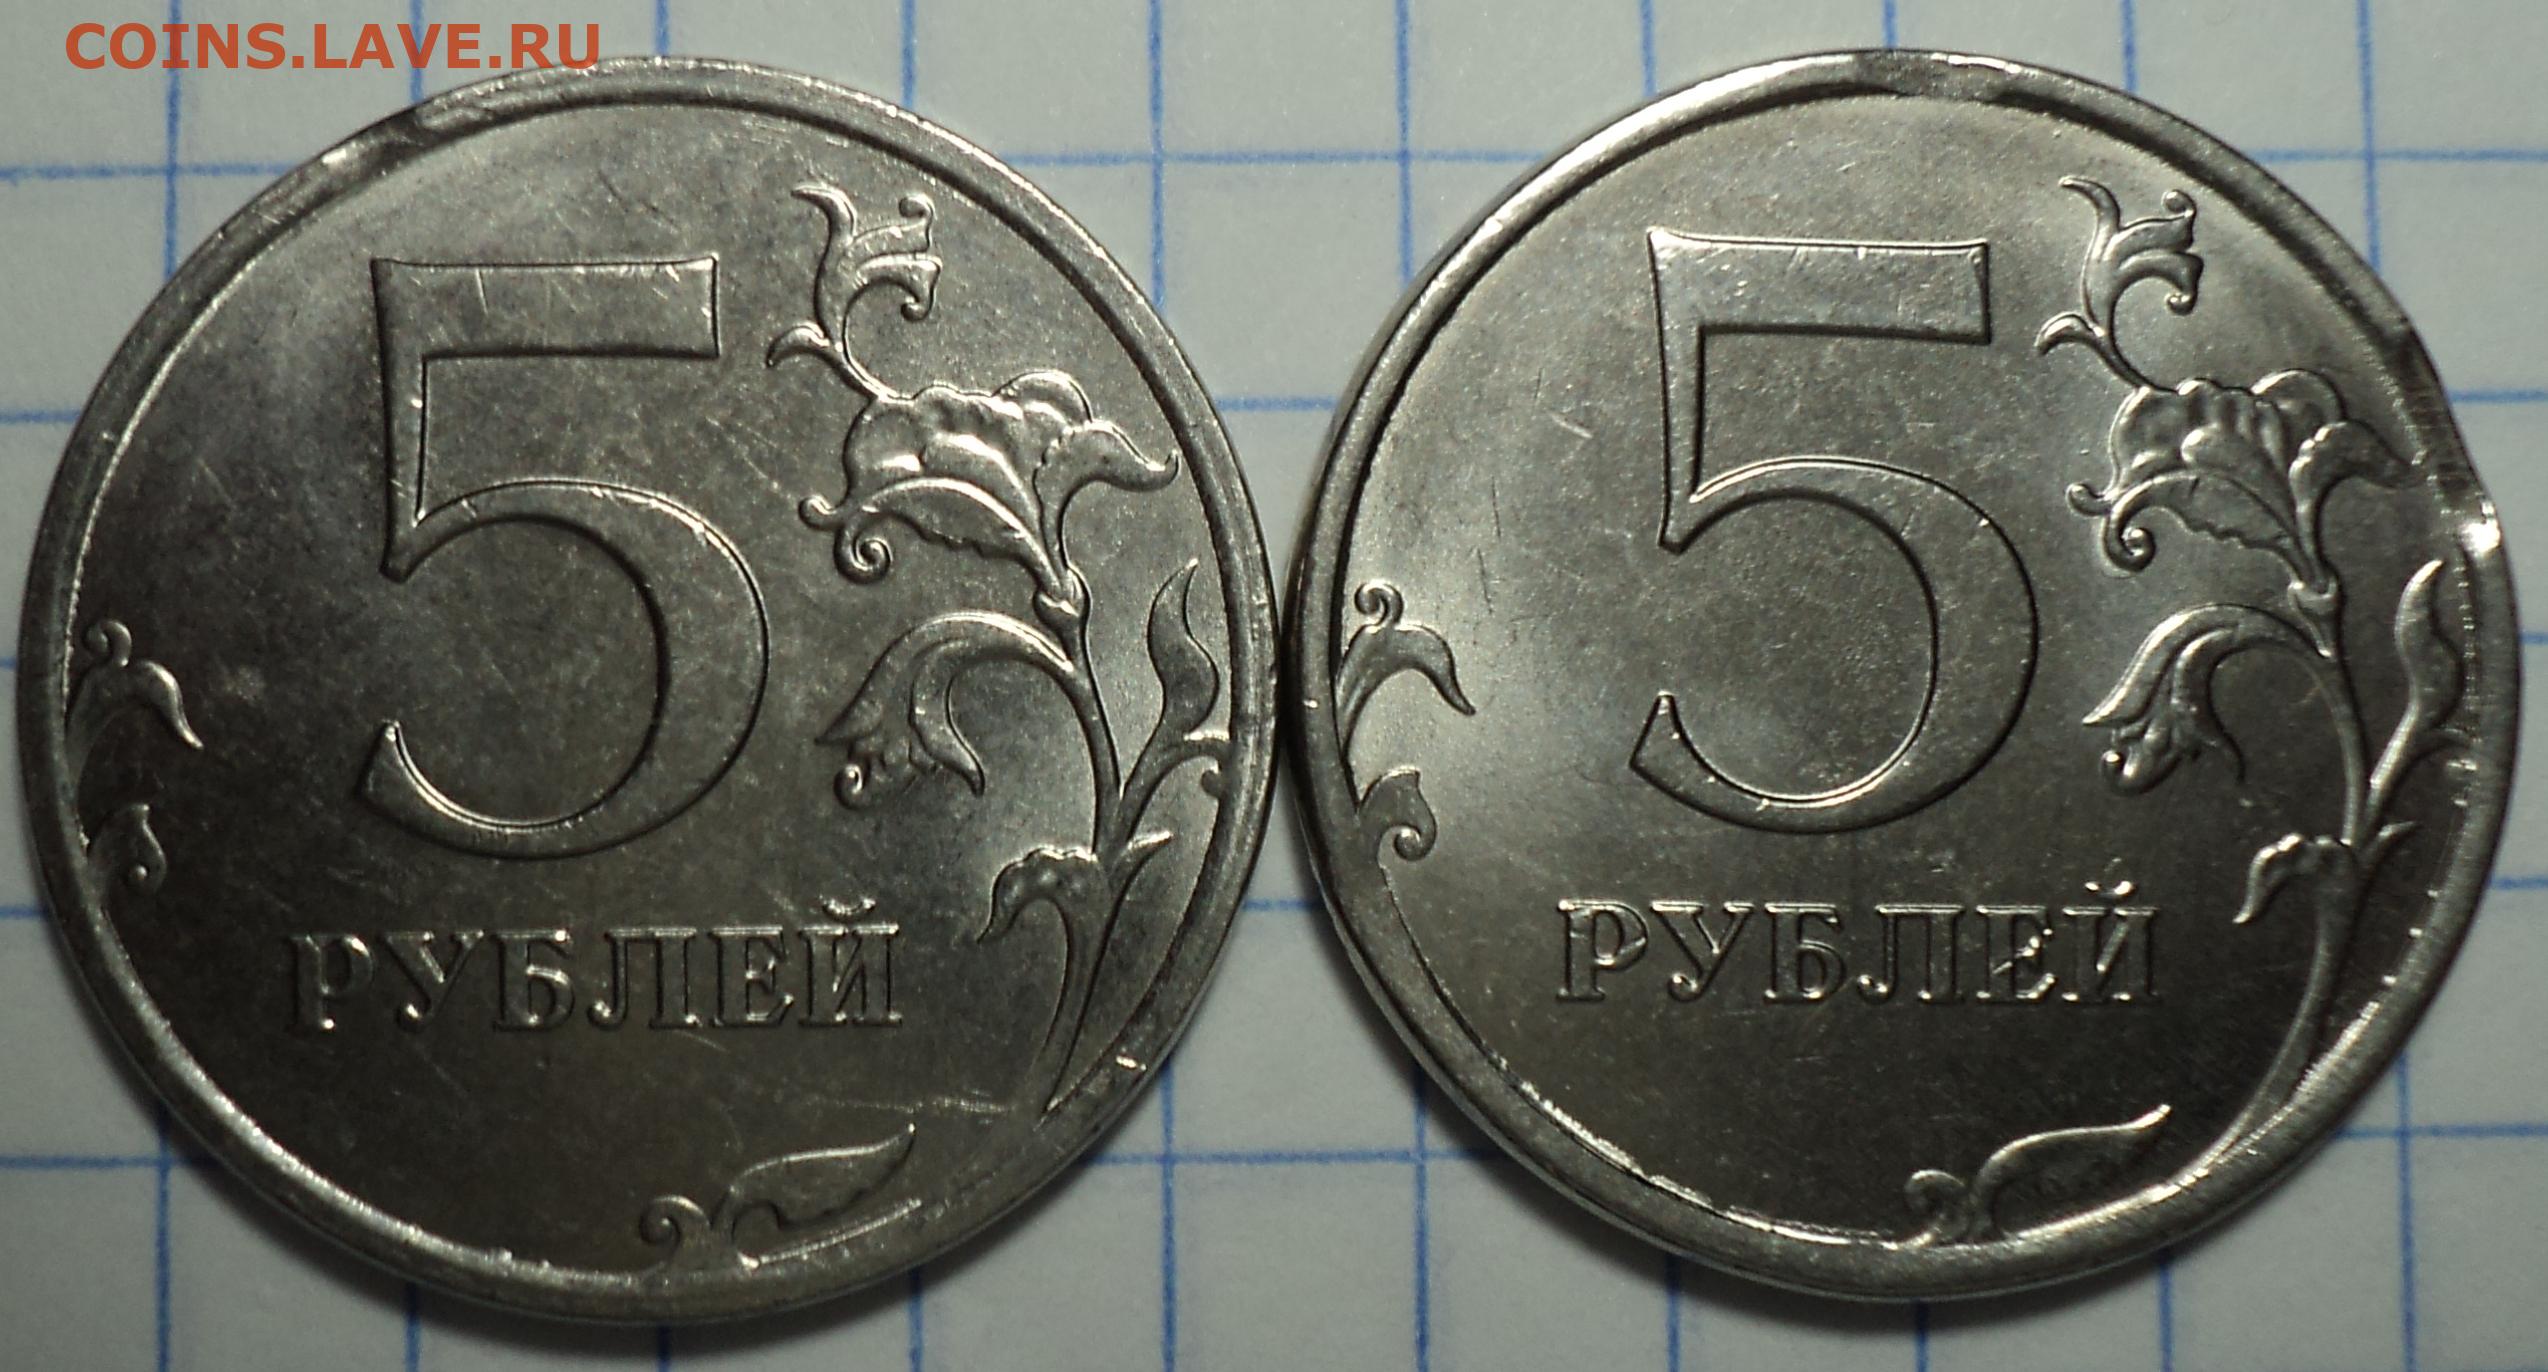 8 копеек в рублях. Выкус монета 5 копеек. 12.5 Рублей монета. 5 Копеек 98. Монета 9 рублей и 10 копеек.